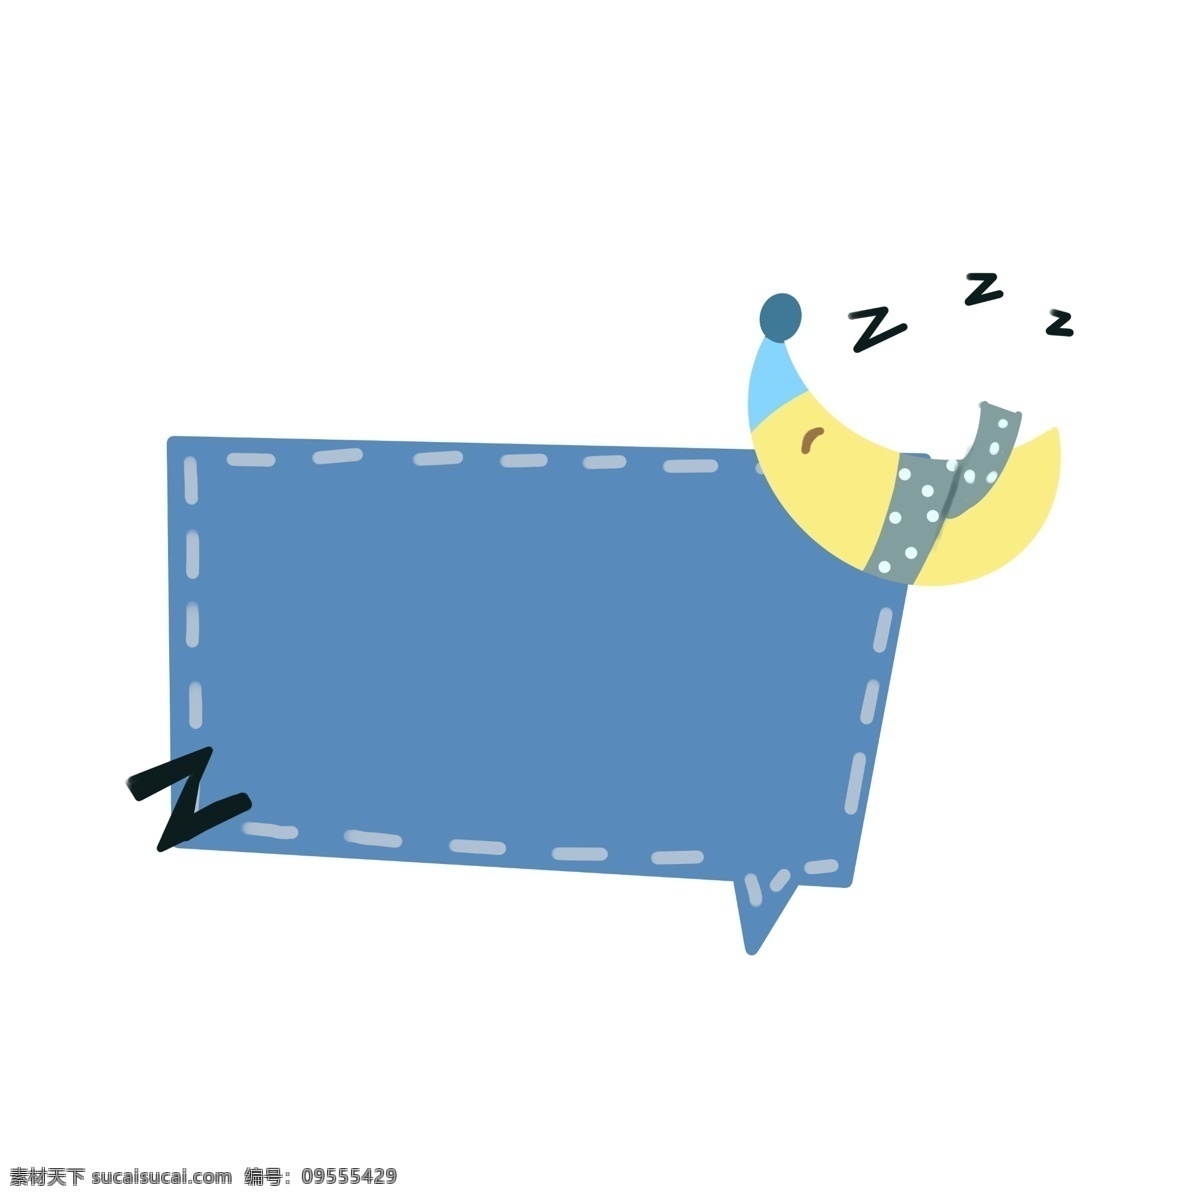 简单 对话框 手绘 晚安 可爱 对话款 蓝色 简约 框 卡通 月亮 晚安对话框 圆形 卡通手绘